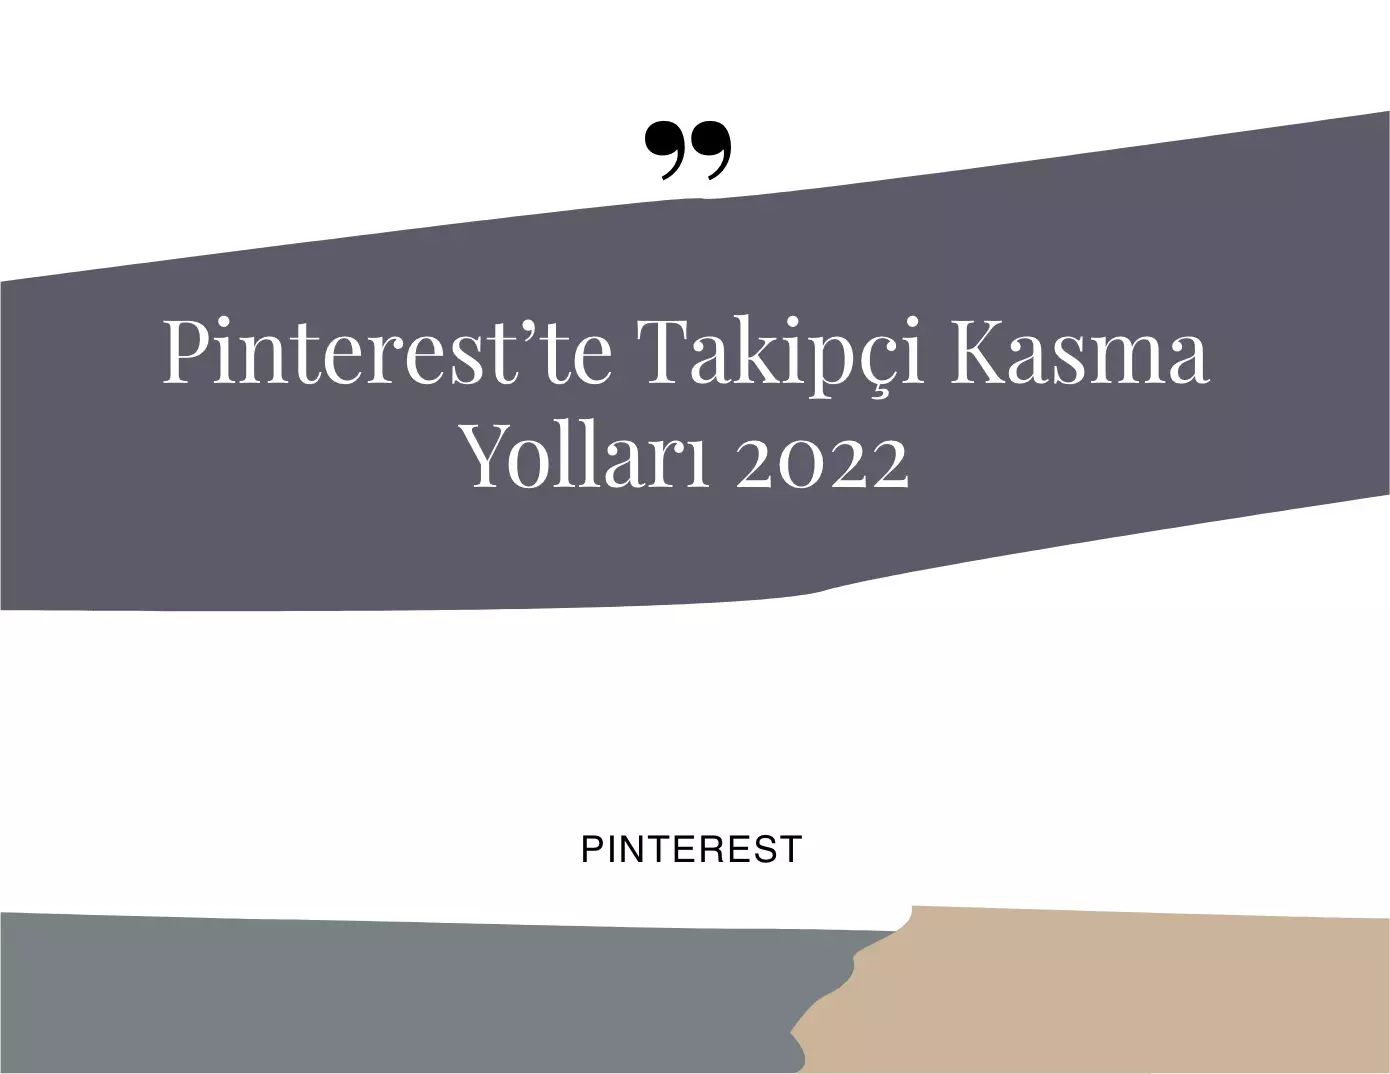 Pinterest’te Takipçi Kasma Yolları 2022